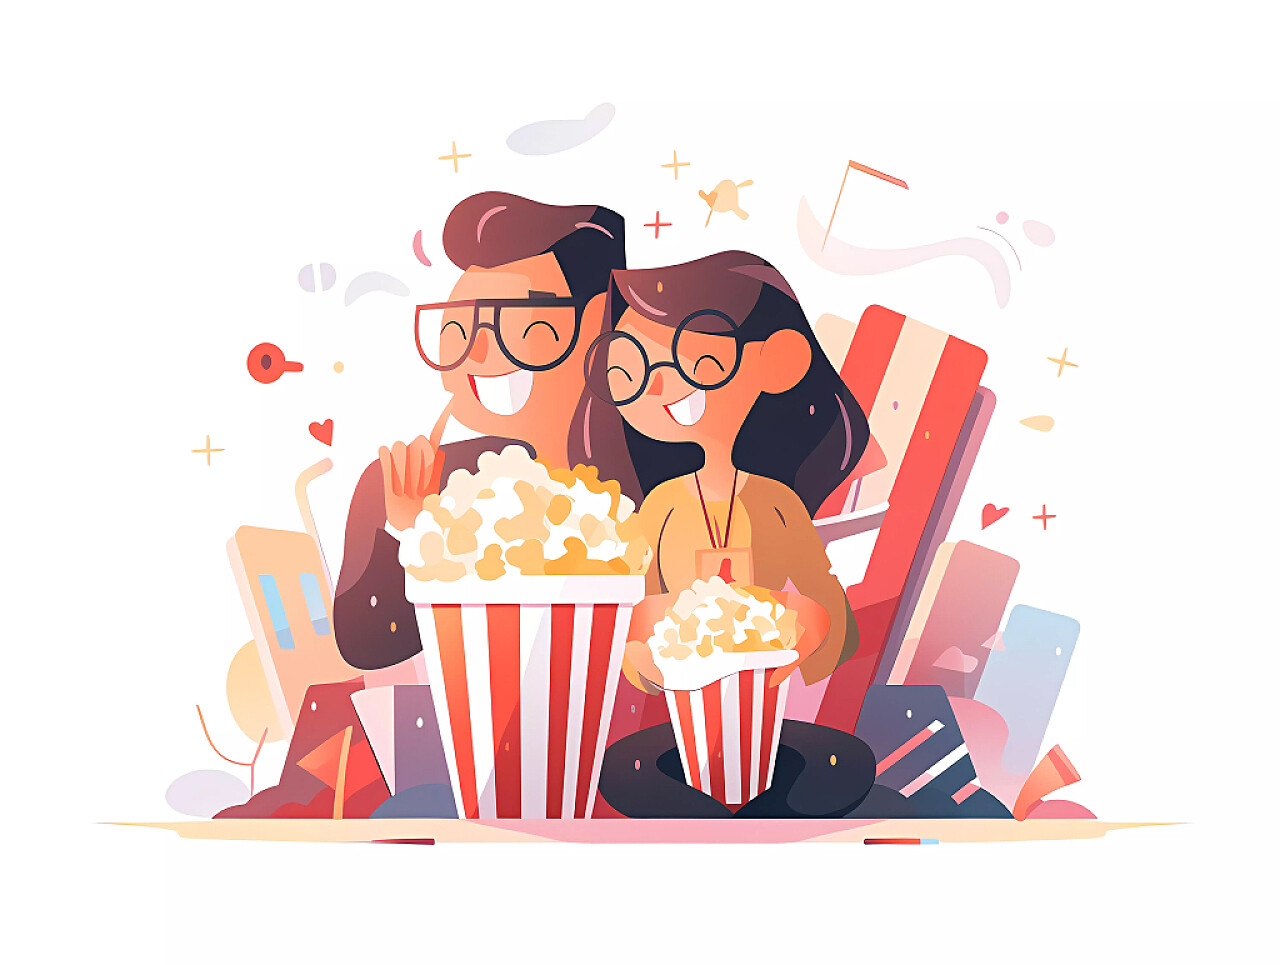 浪漫情侣在电影院观影吃爆米花场景